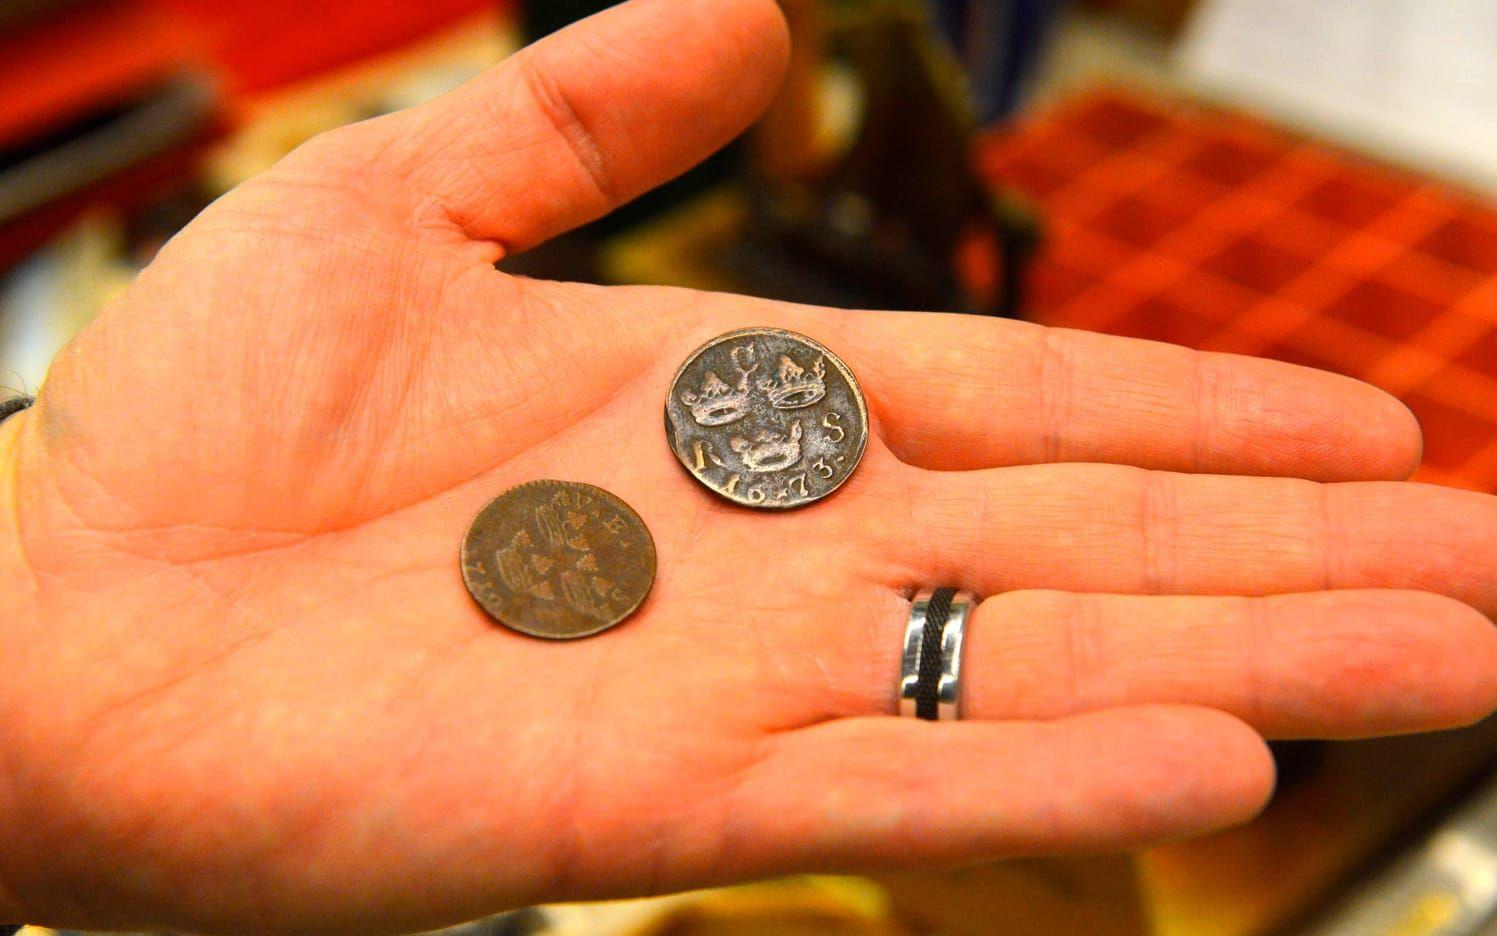 Hos Jan-Erik Averby fanns bland annat mynt från 1600-talet. Bild: Maria Åkesson